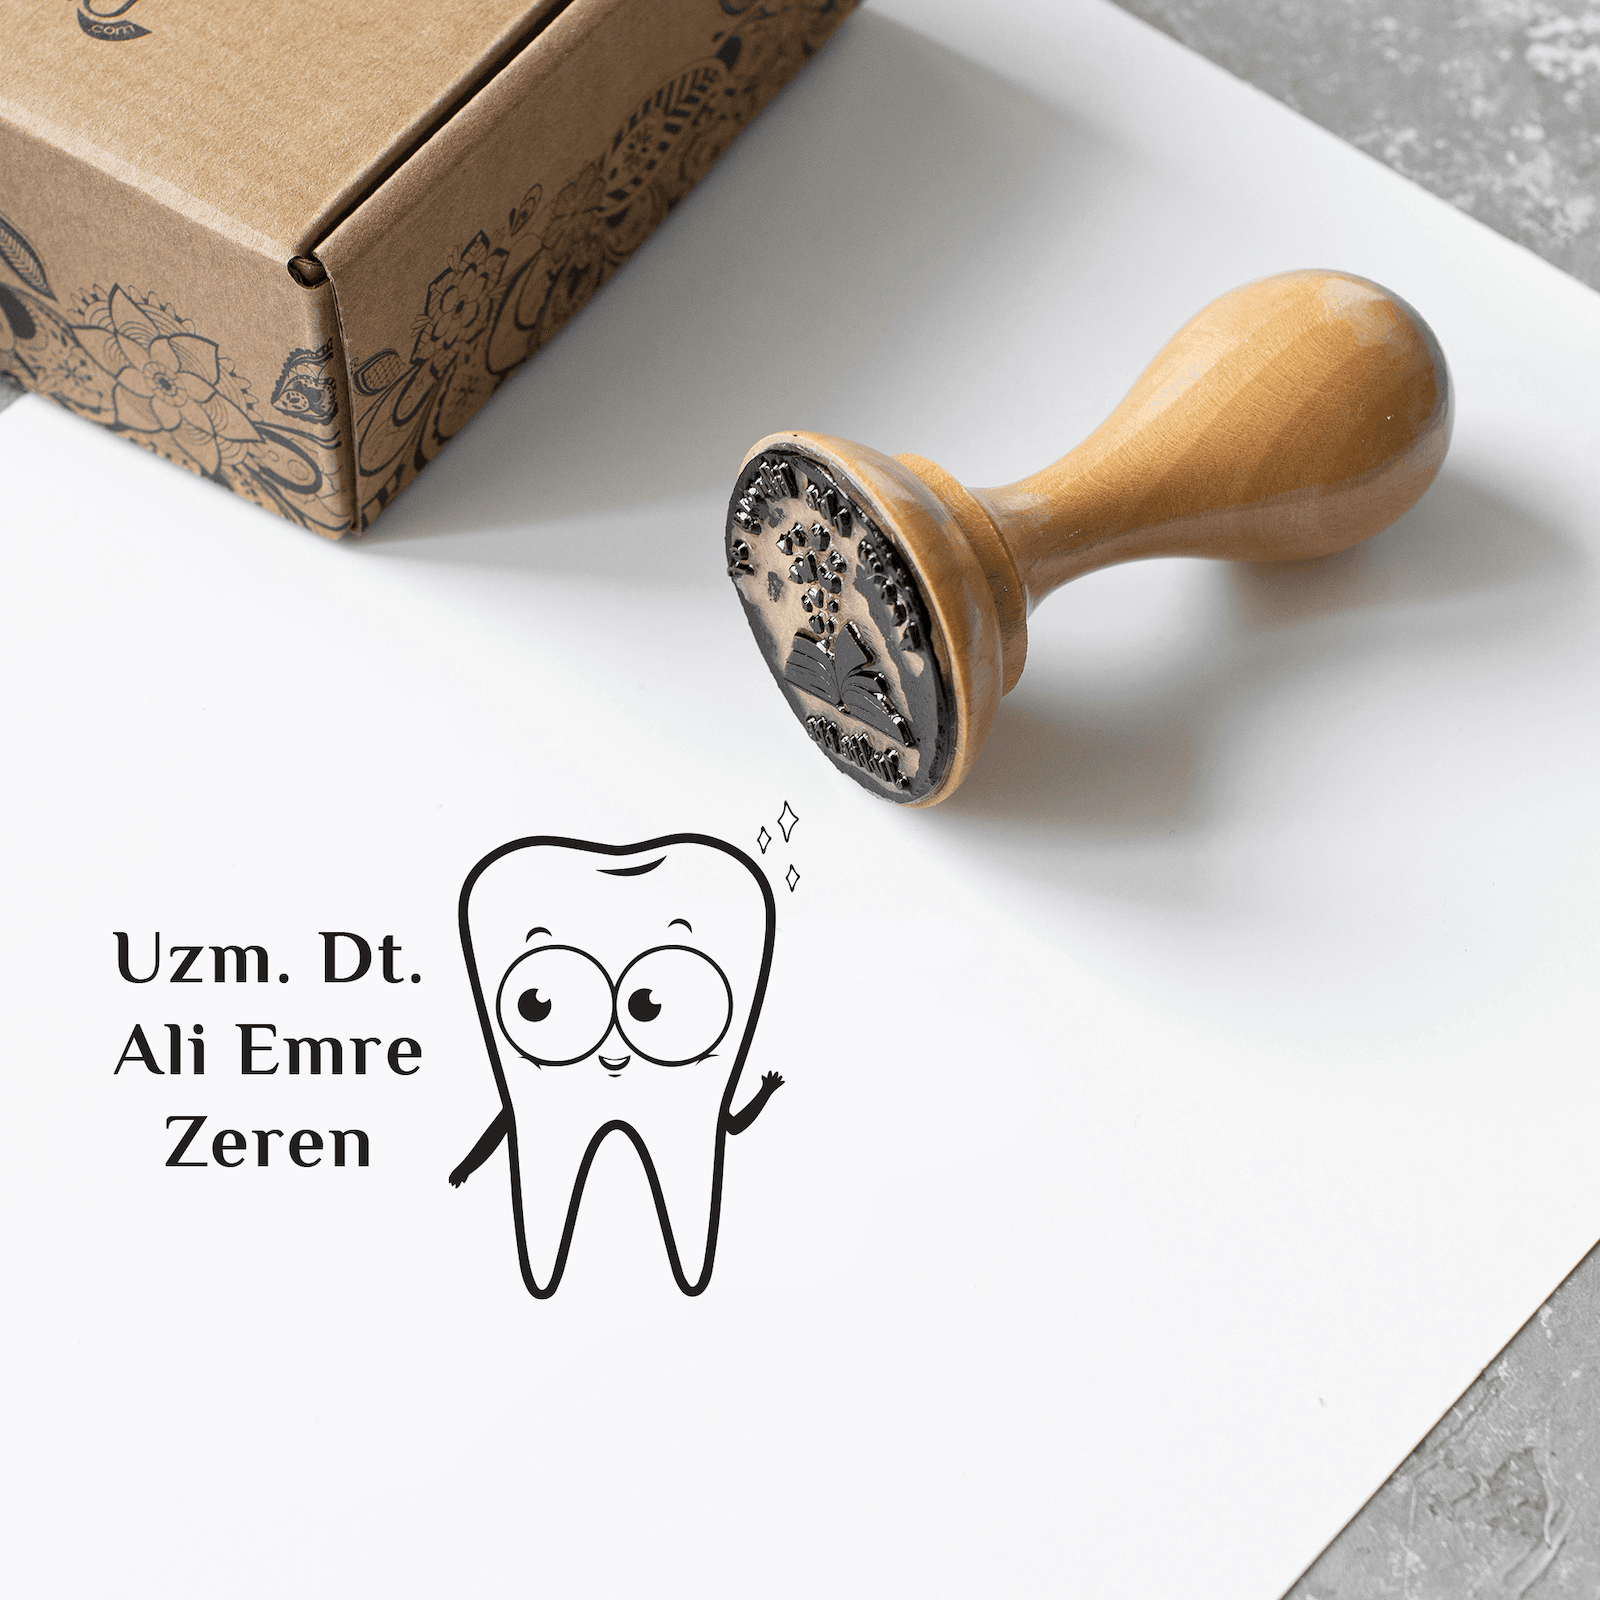 Erkek Diş Hekimi Cesaret Mührü ve Kaşesi - Ahşap Sap